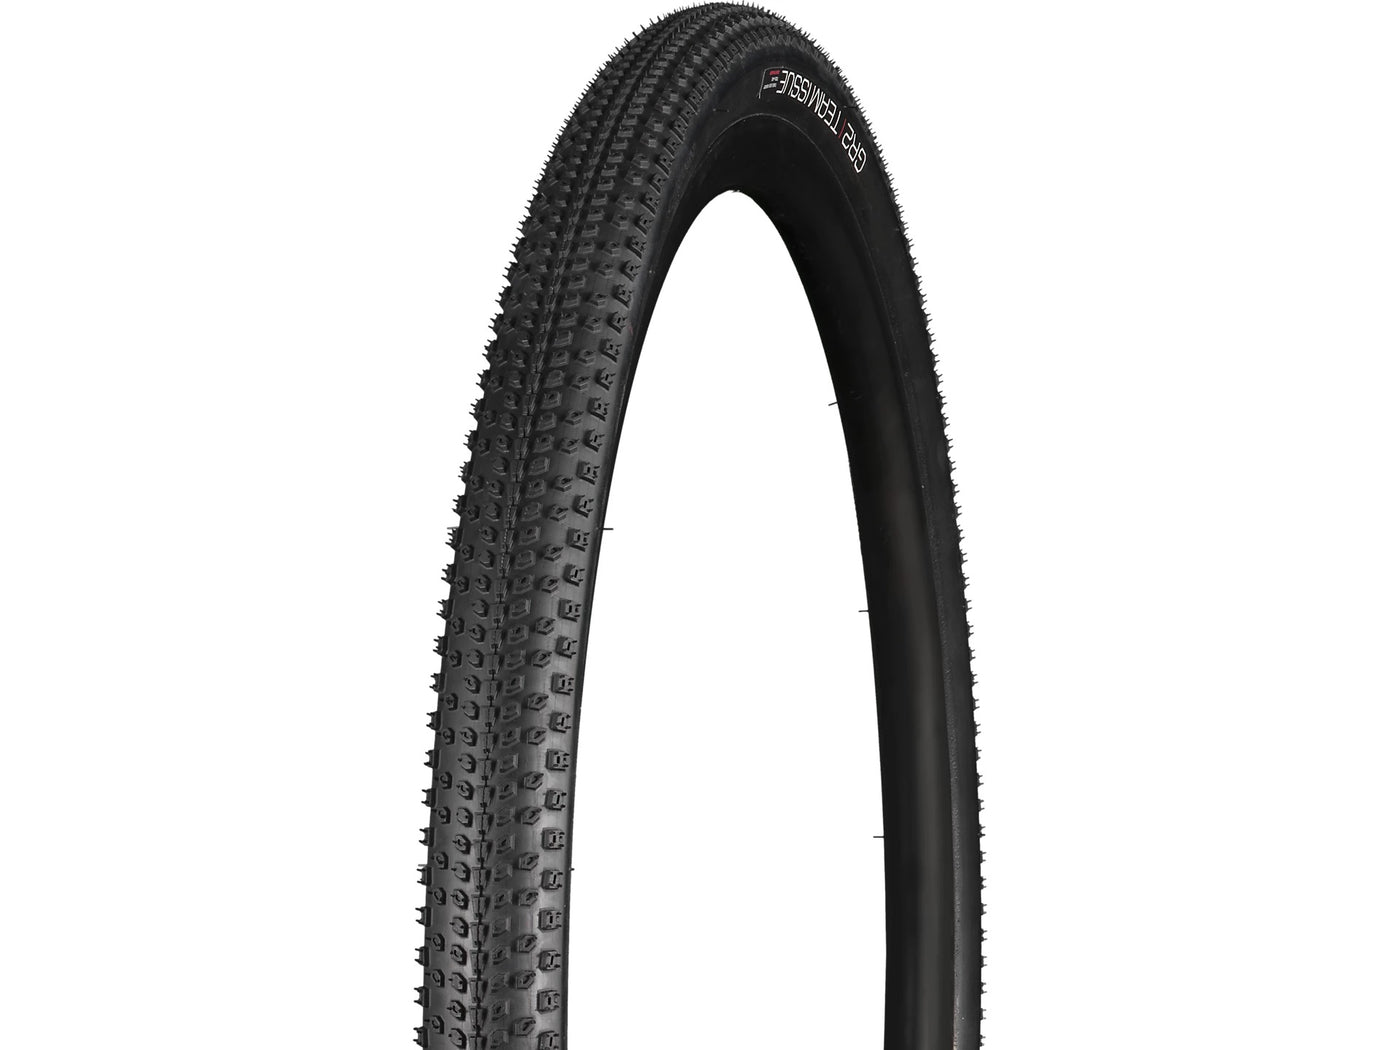 Bontrager GR2 Team Issue Gravel Tire 700C x 40mm Black